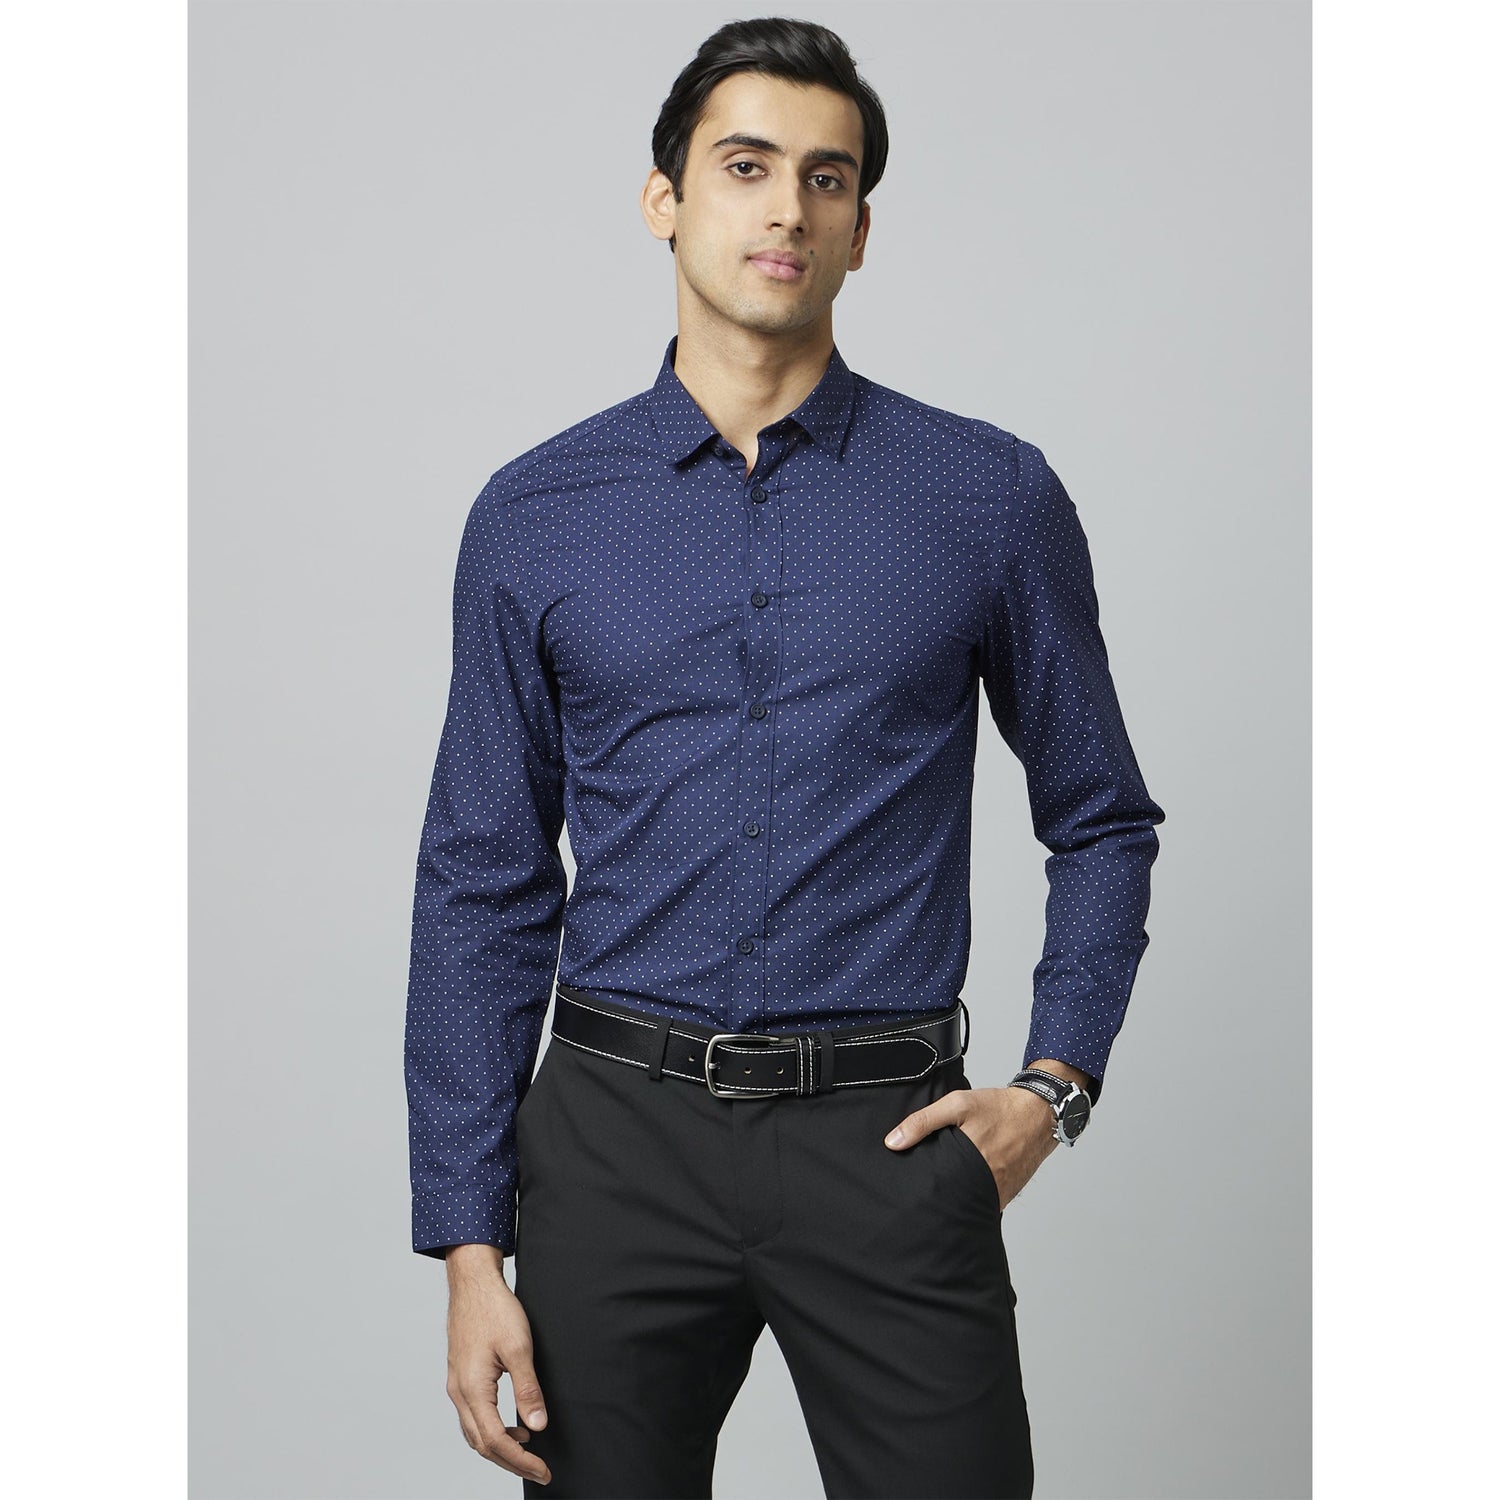 Casual Printed Navy Blue Long Sleeves Shirt